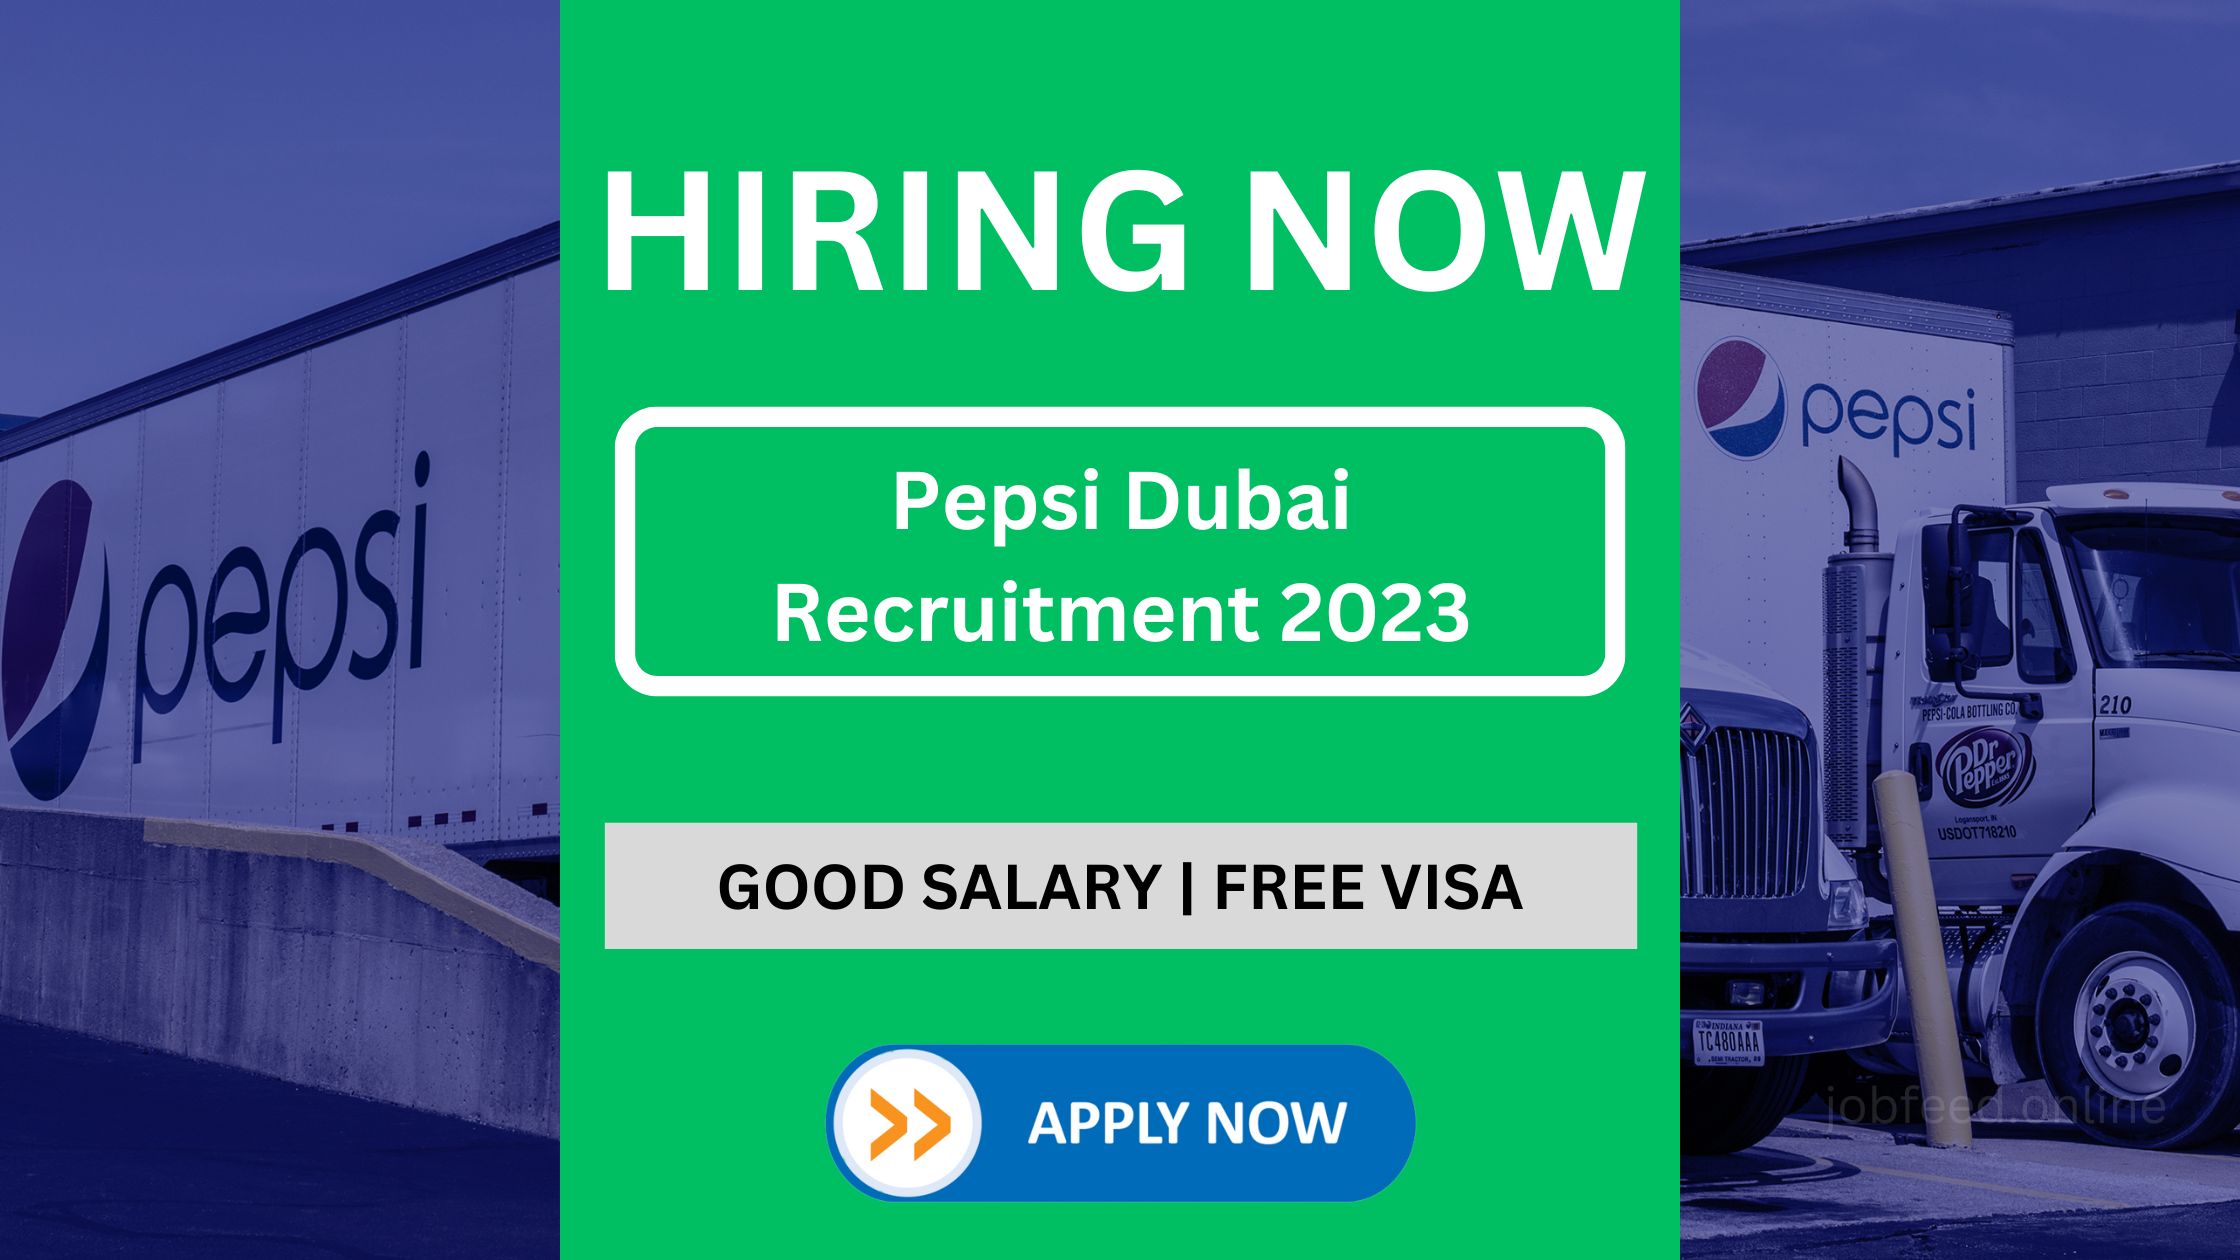 Pepsi Dubai Recruitment 2023: Check Job Role, How to Apply